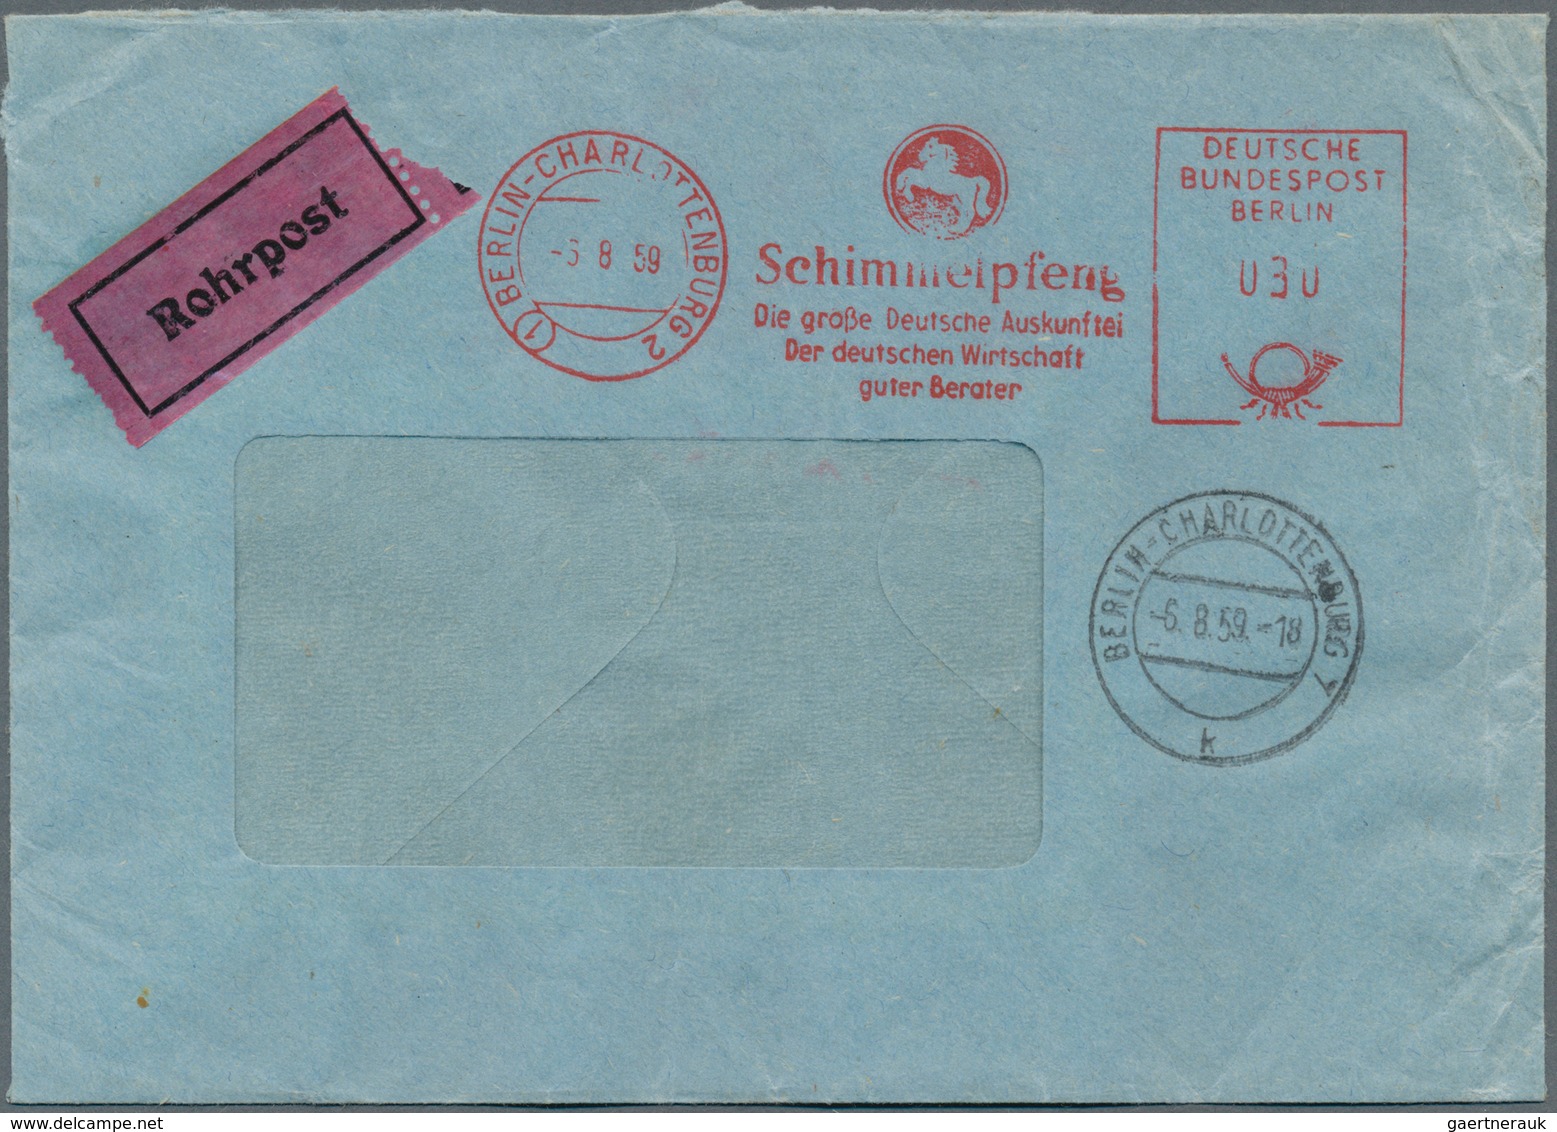 20641 Berlin - Postschnelldienst: 1959, Umschlag Postsache gebührenfrei als Rohrpost-Eilboten Schöneberg 1